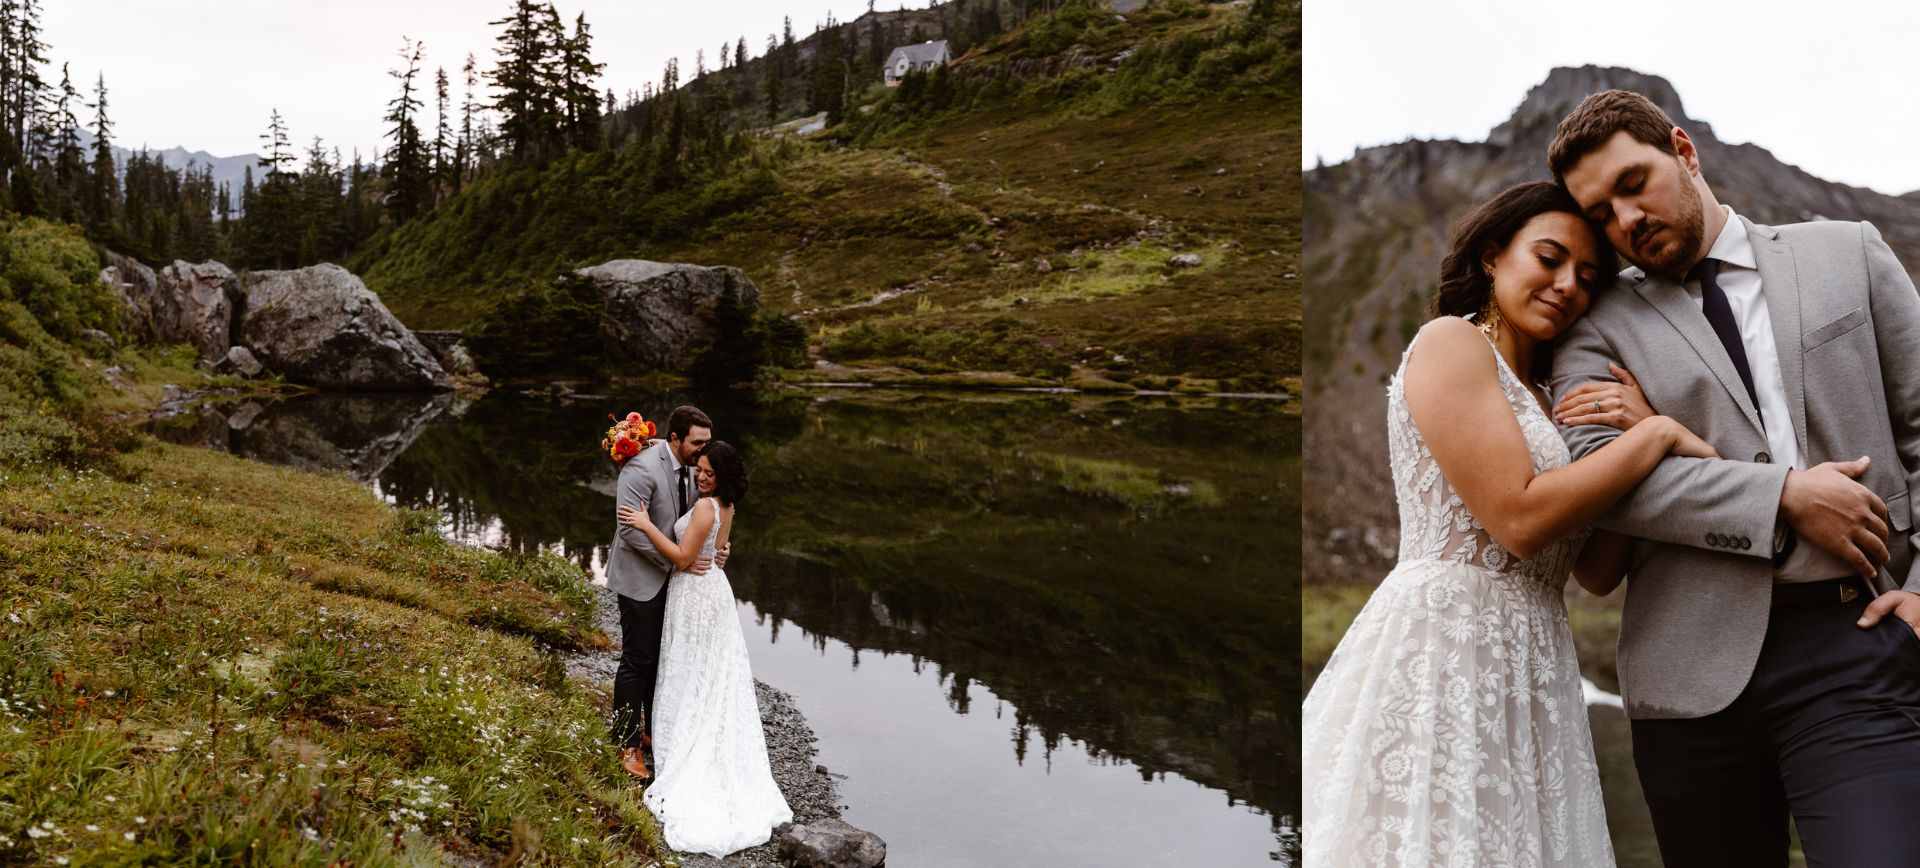 washington adventure wedding - north cascades elopement package